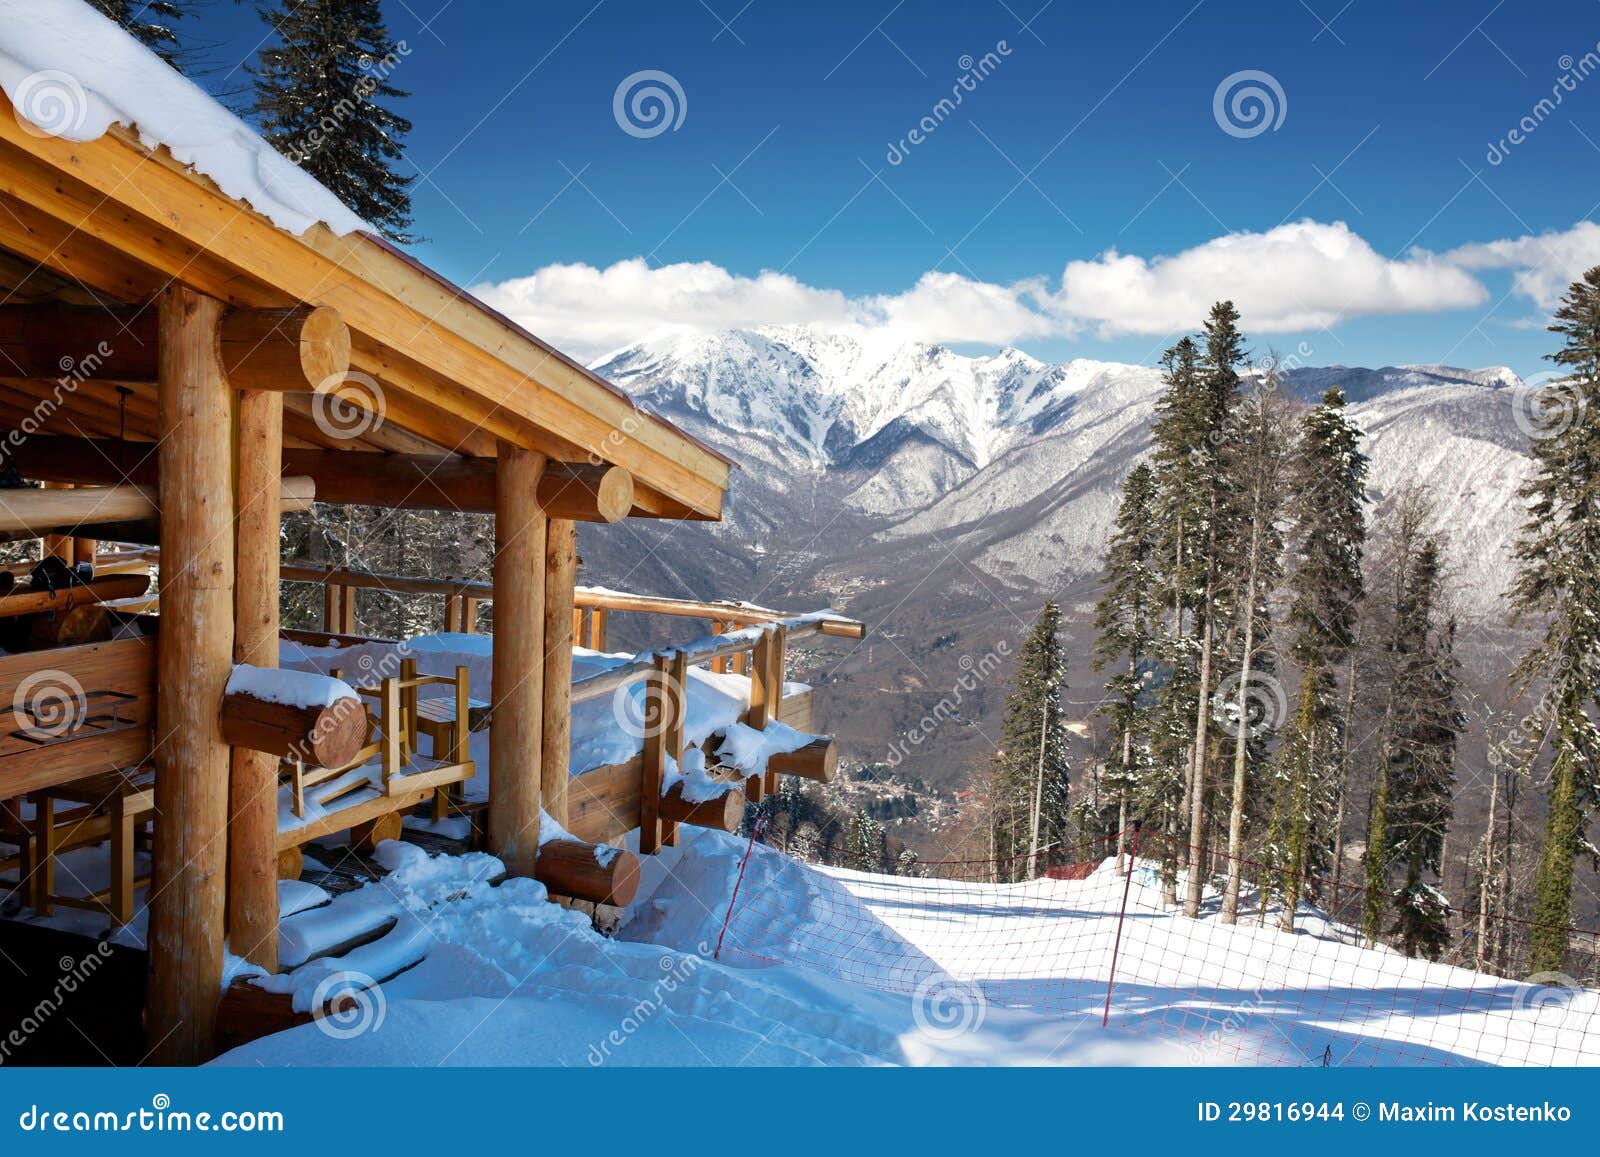 wooden ski chalet in snow